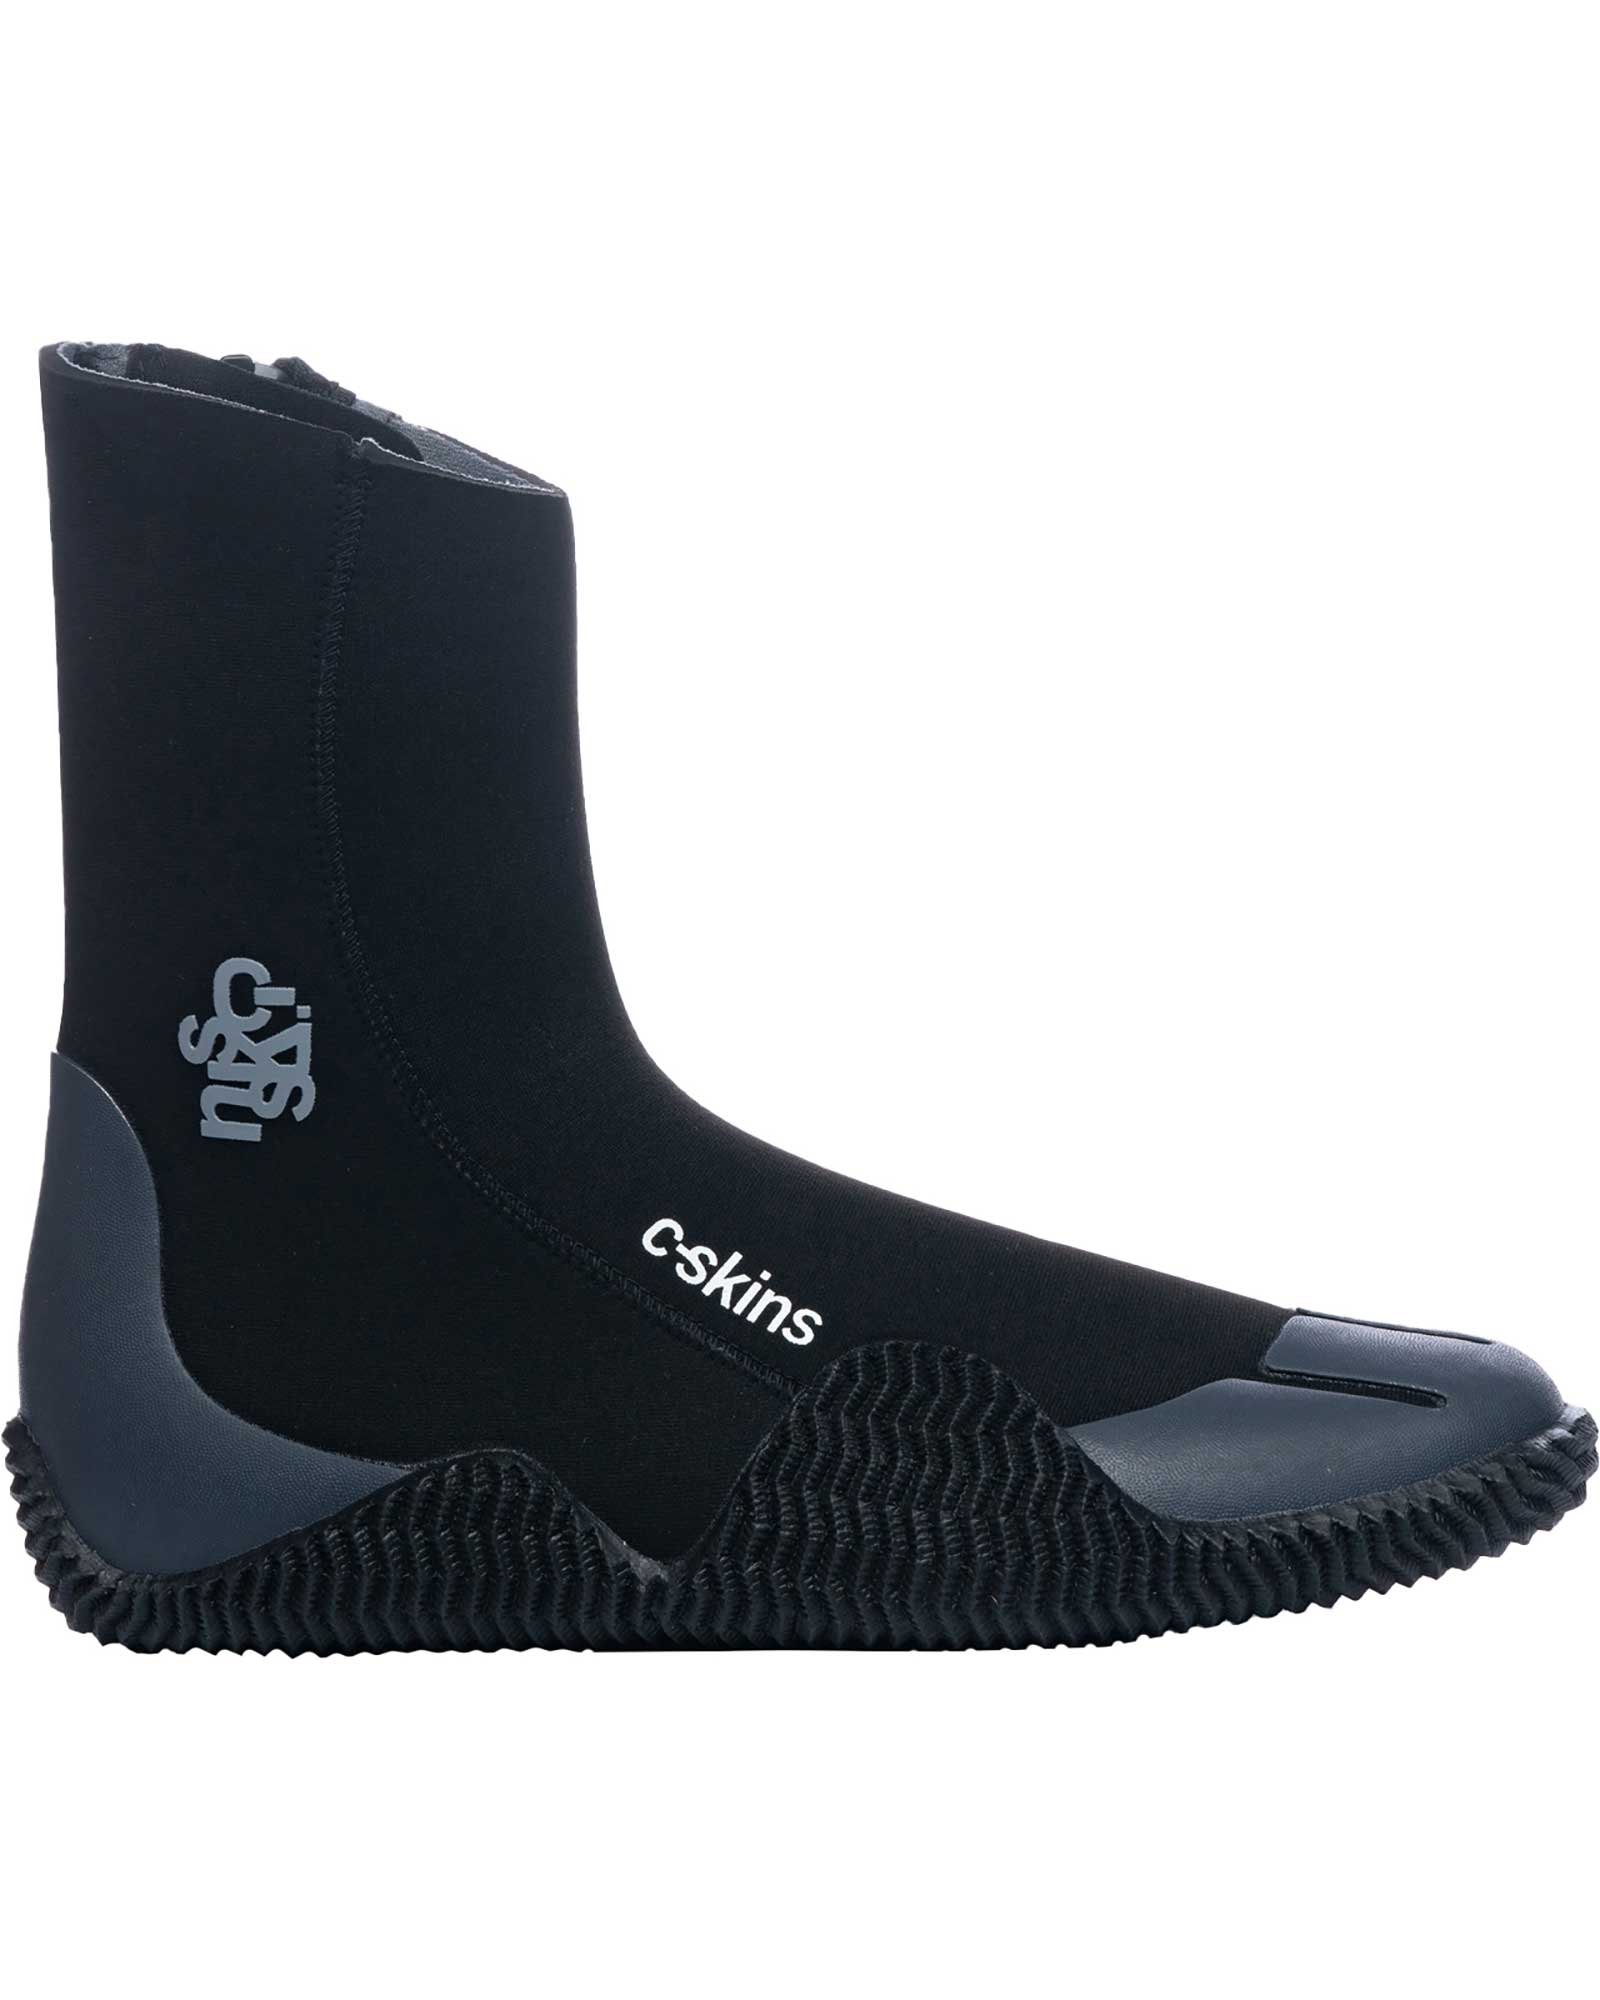 C Skins Legend 5mm Zipped Boots - Black/Charcoal UK 10